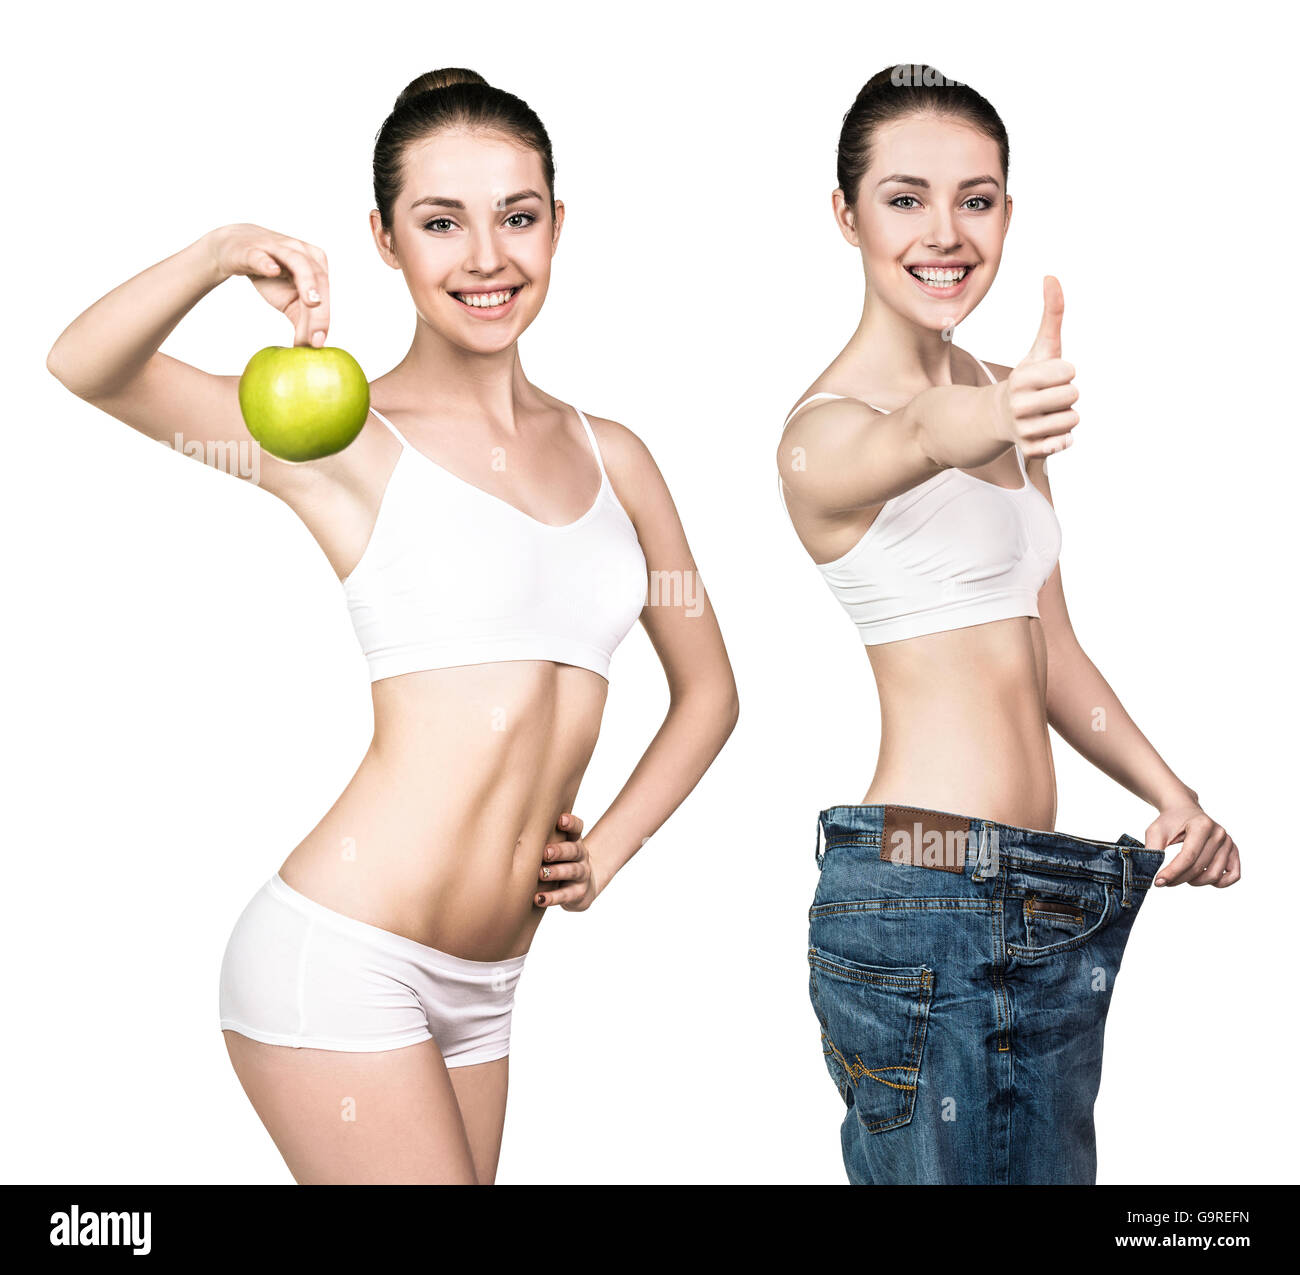 Junge Frau mit Gewicht-Verlust-Ergebnis Stockfoto